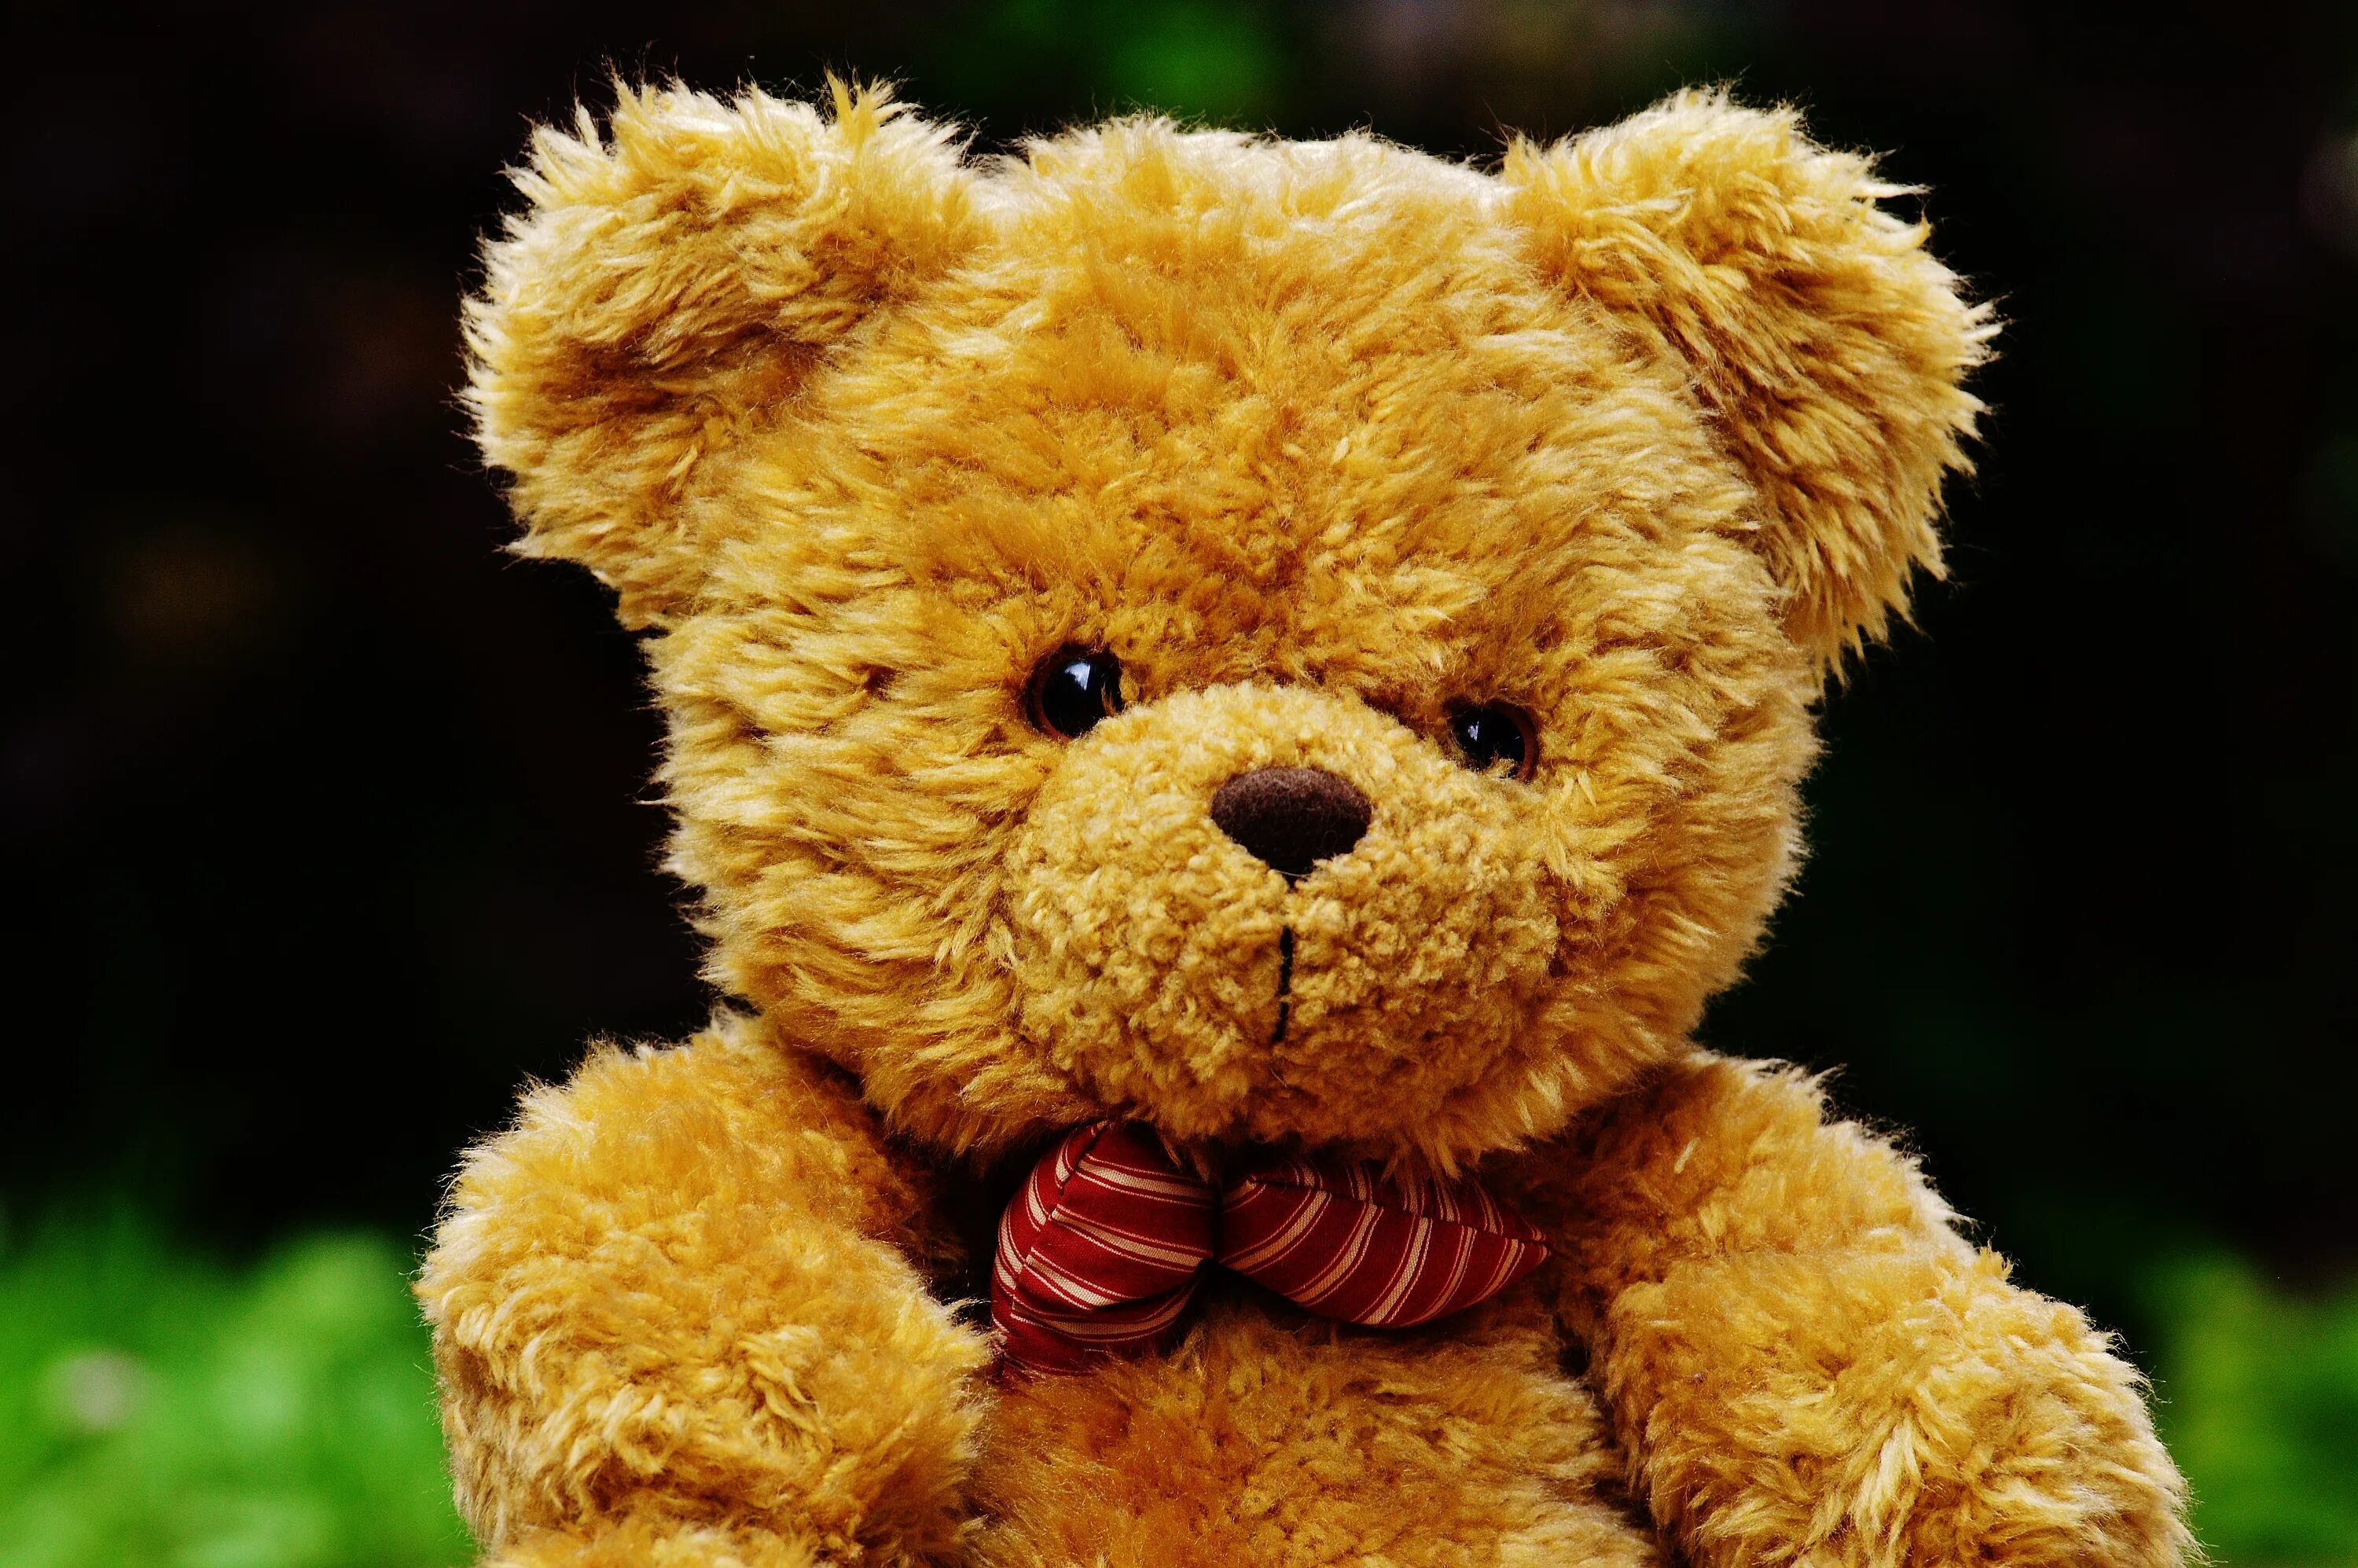 A brown teddy bear. Тедди Беар. Плюшевый мишка. Милый плюшевый мишка. Медвежонок Тедди.